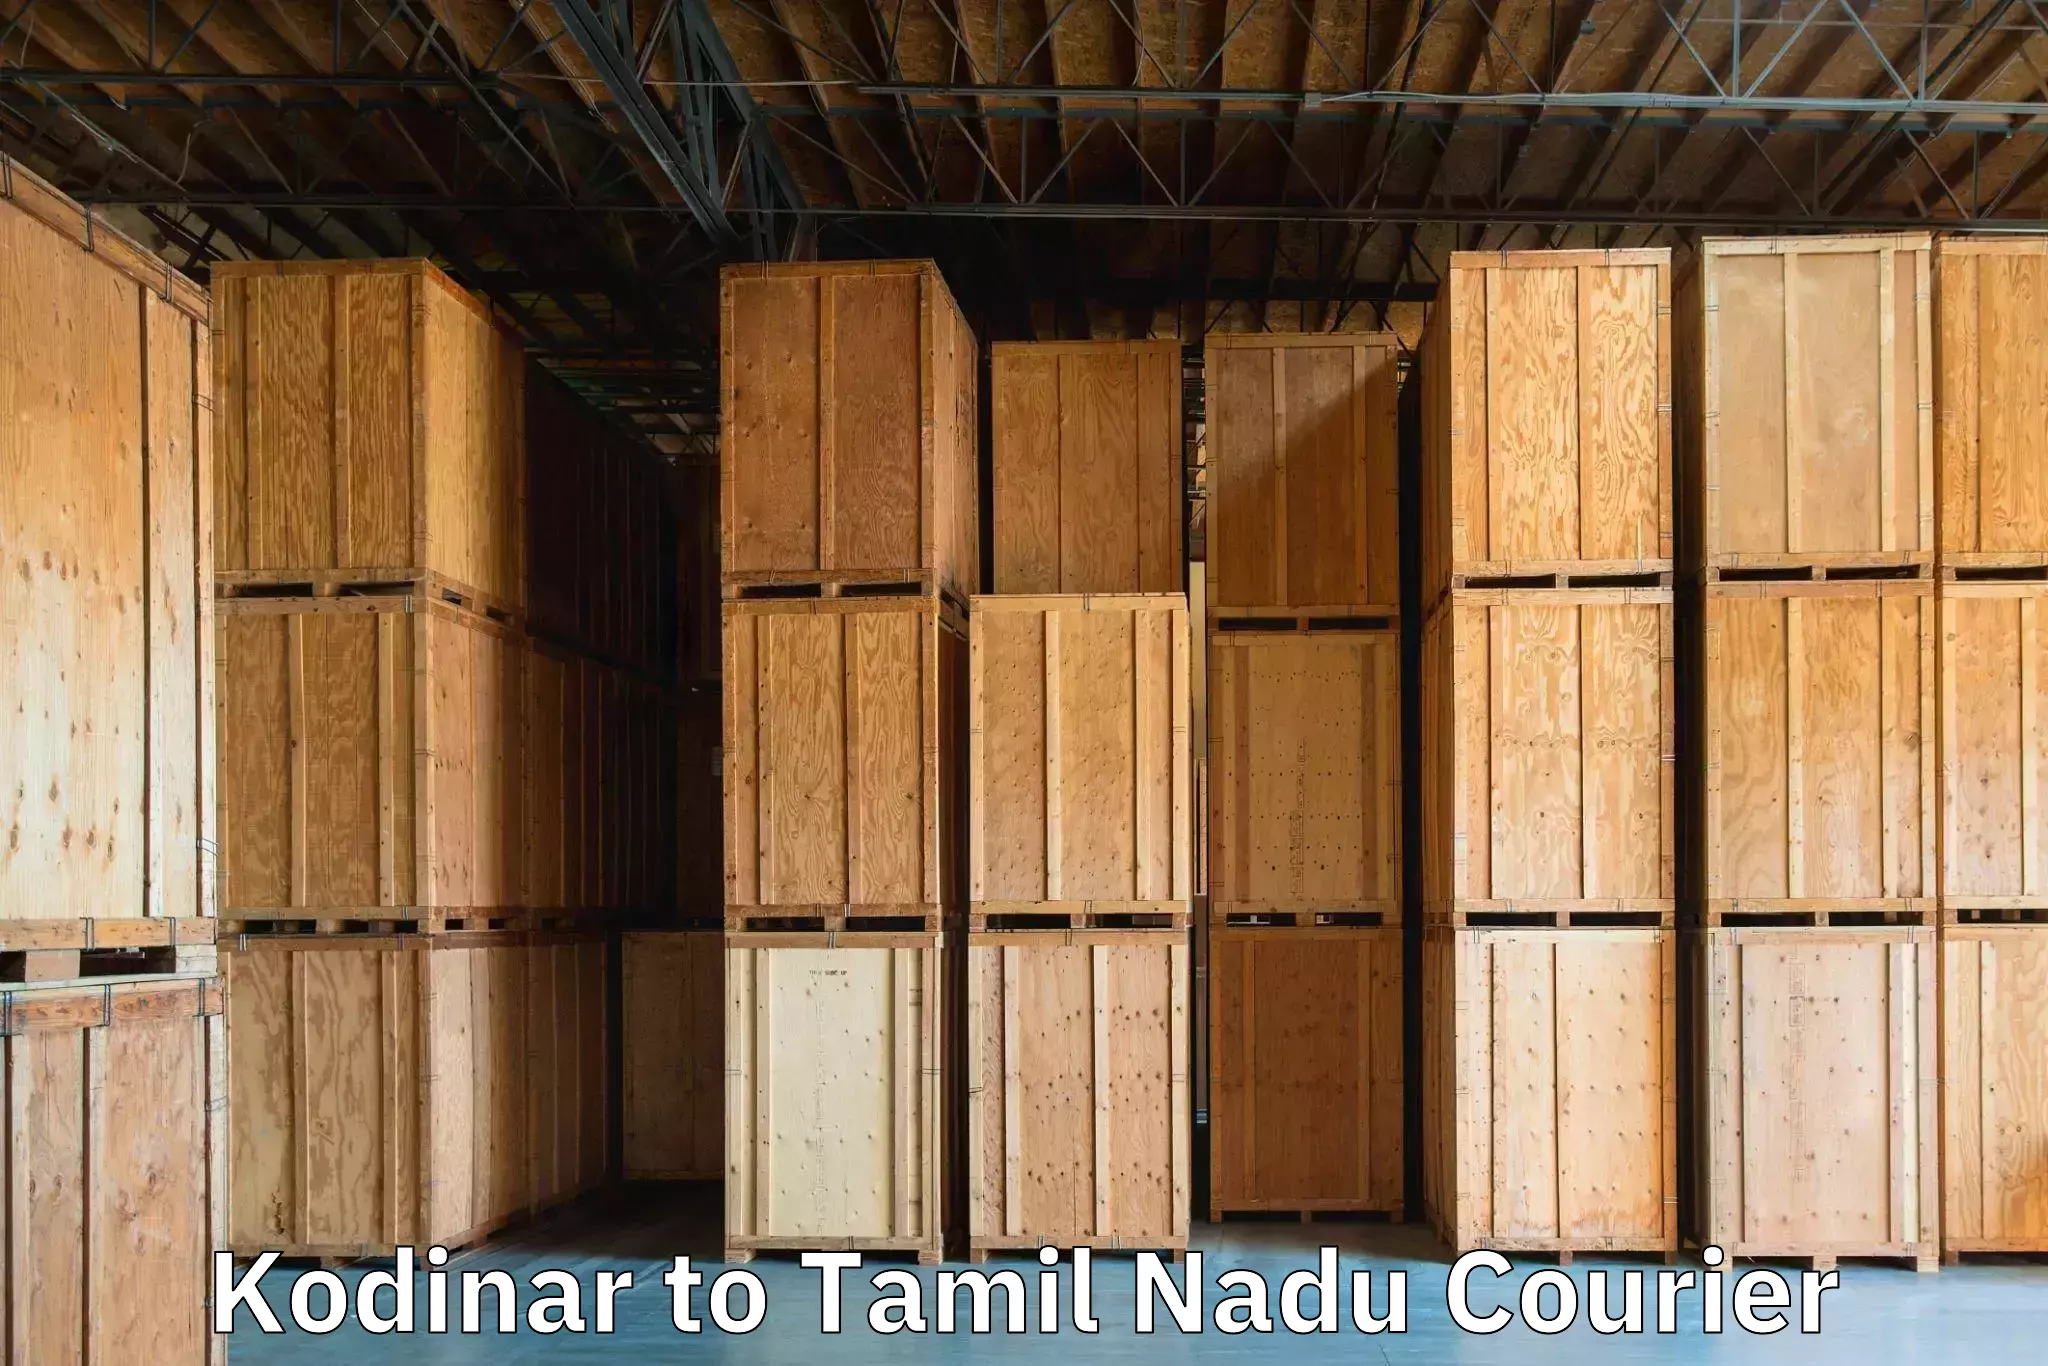 Baggage transport innovation Kodinar to Tamil Nadu